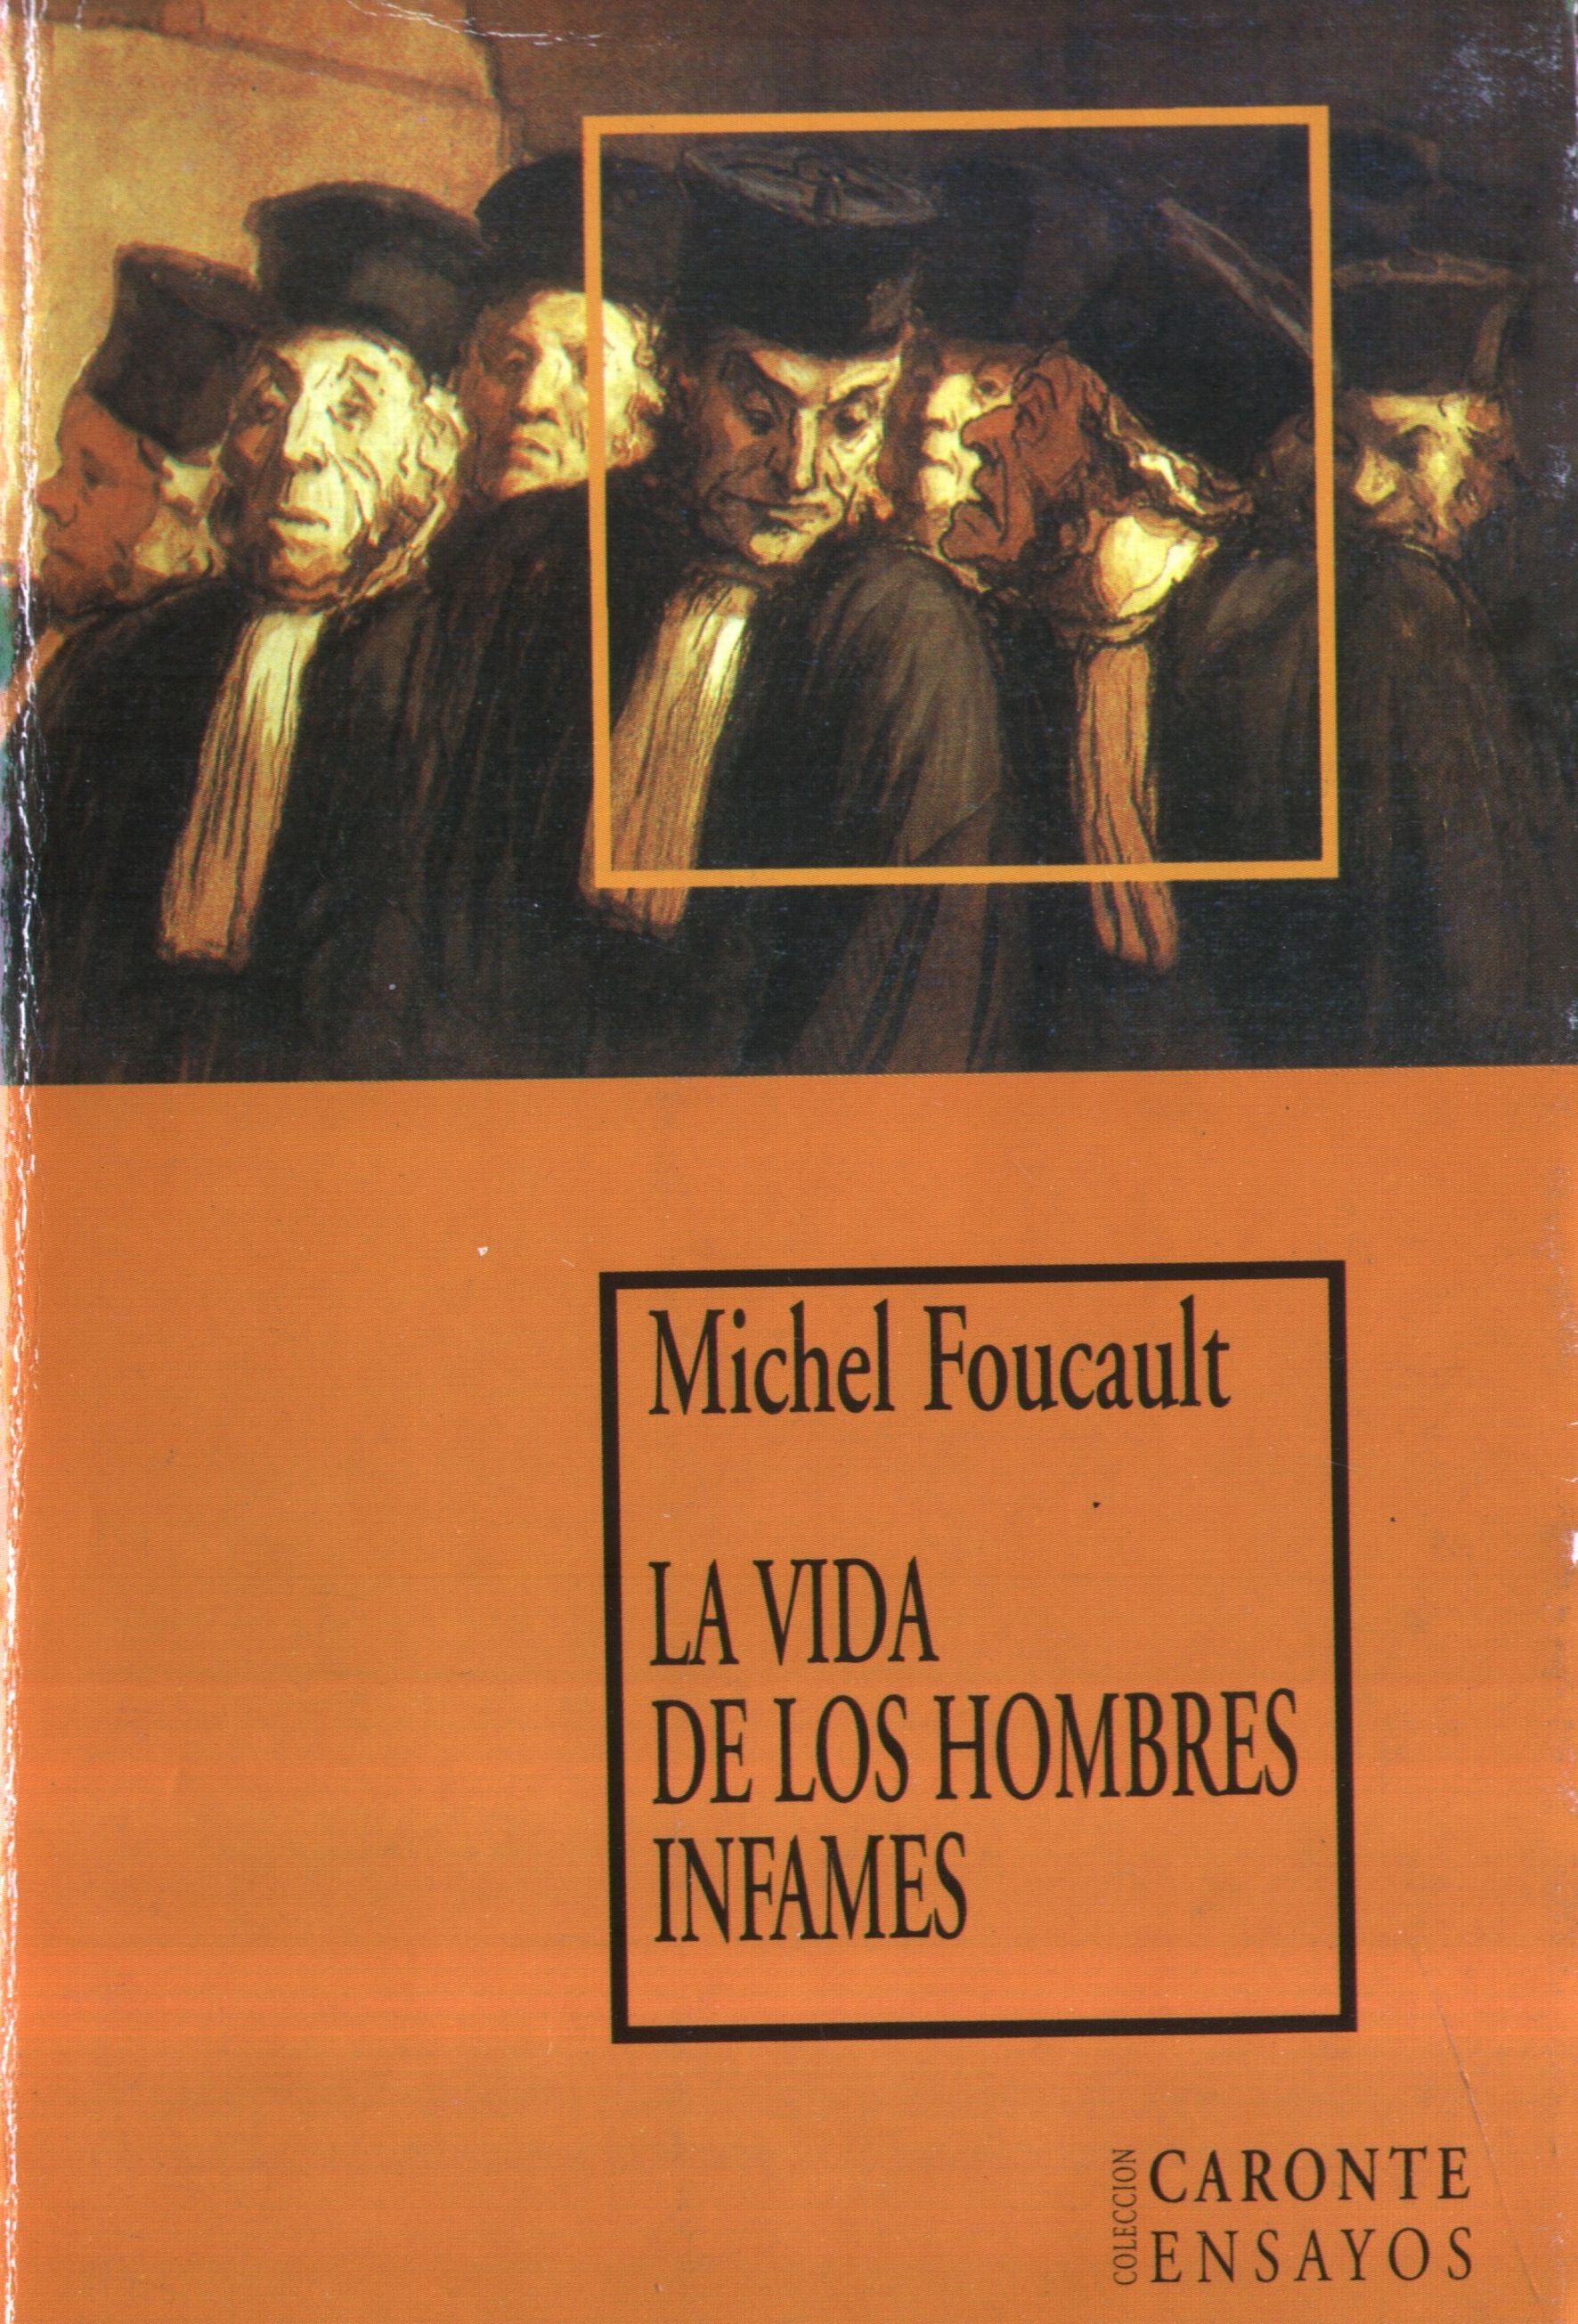 Biopoder Y Biopolitica Foucault Pdf